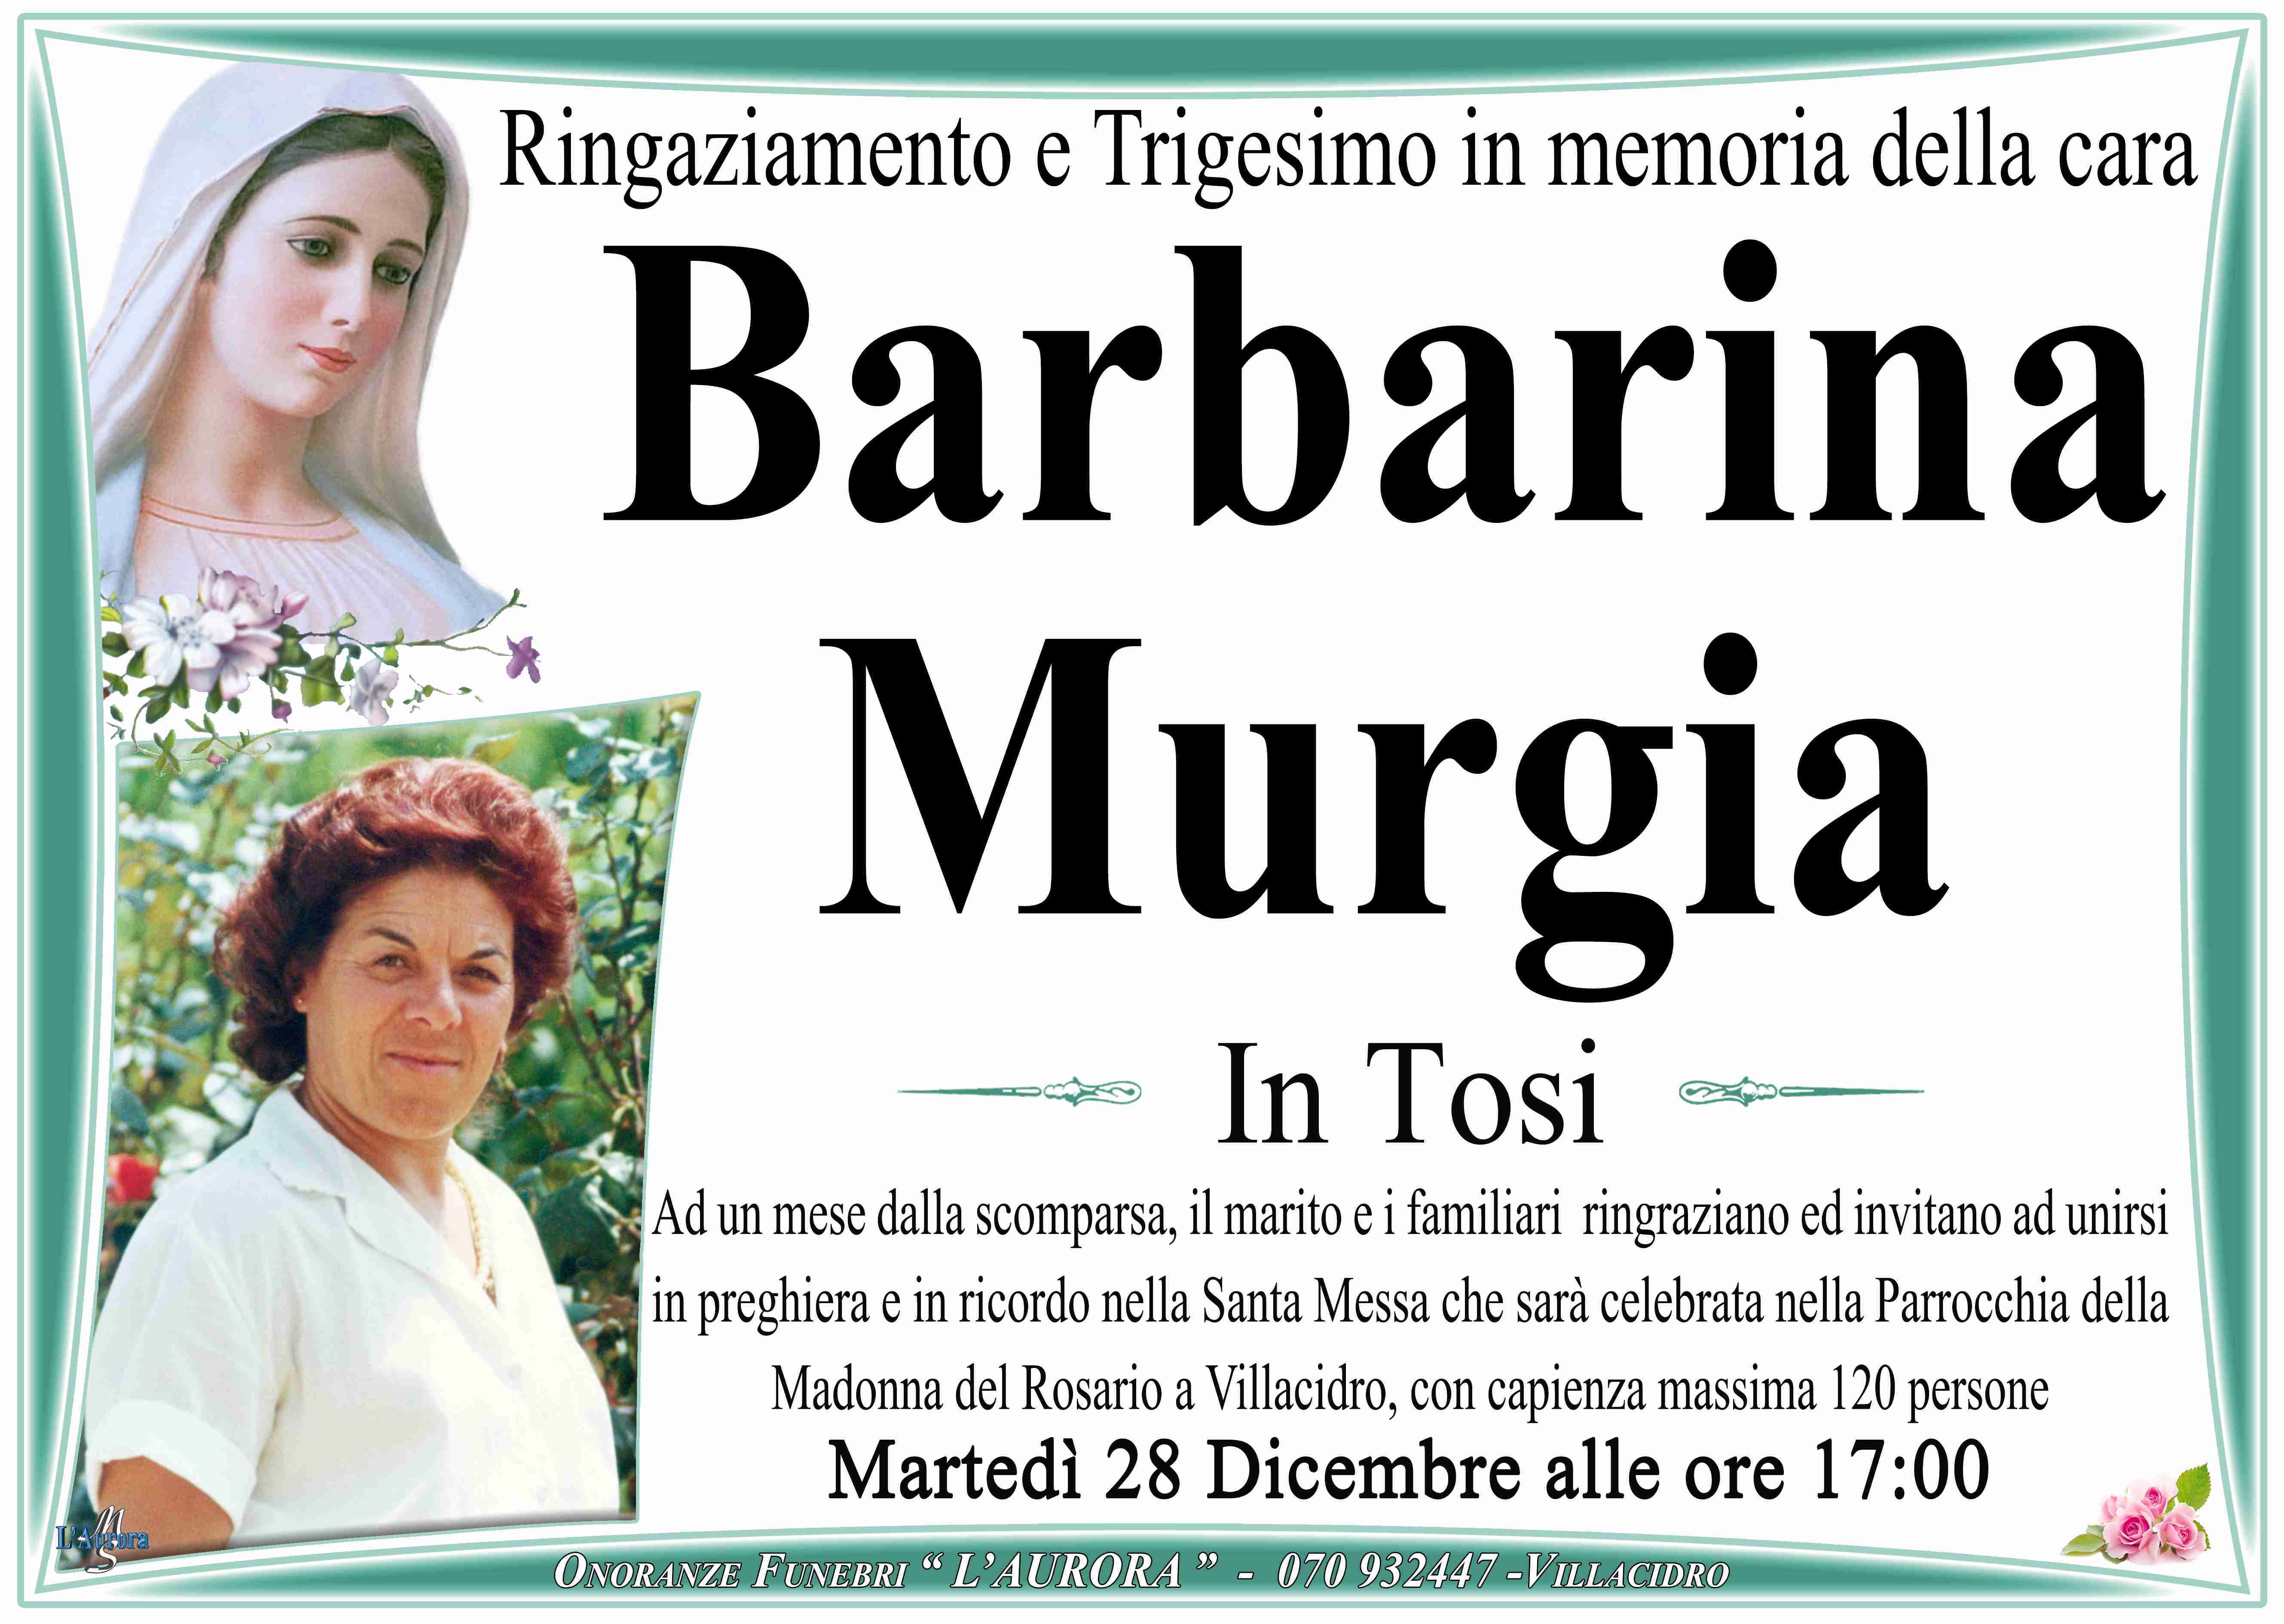 Barbarina Murgia